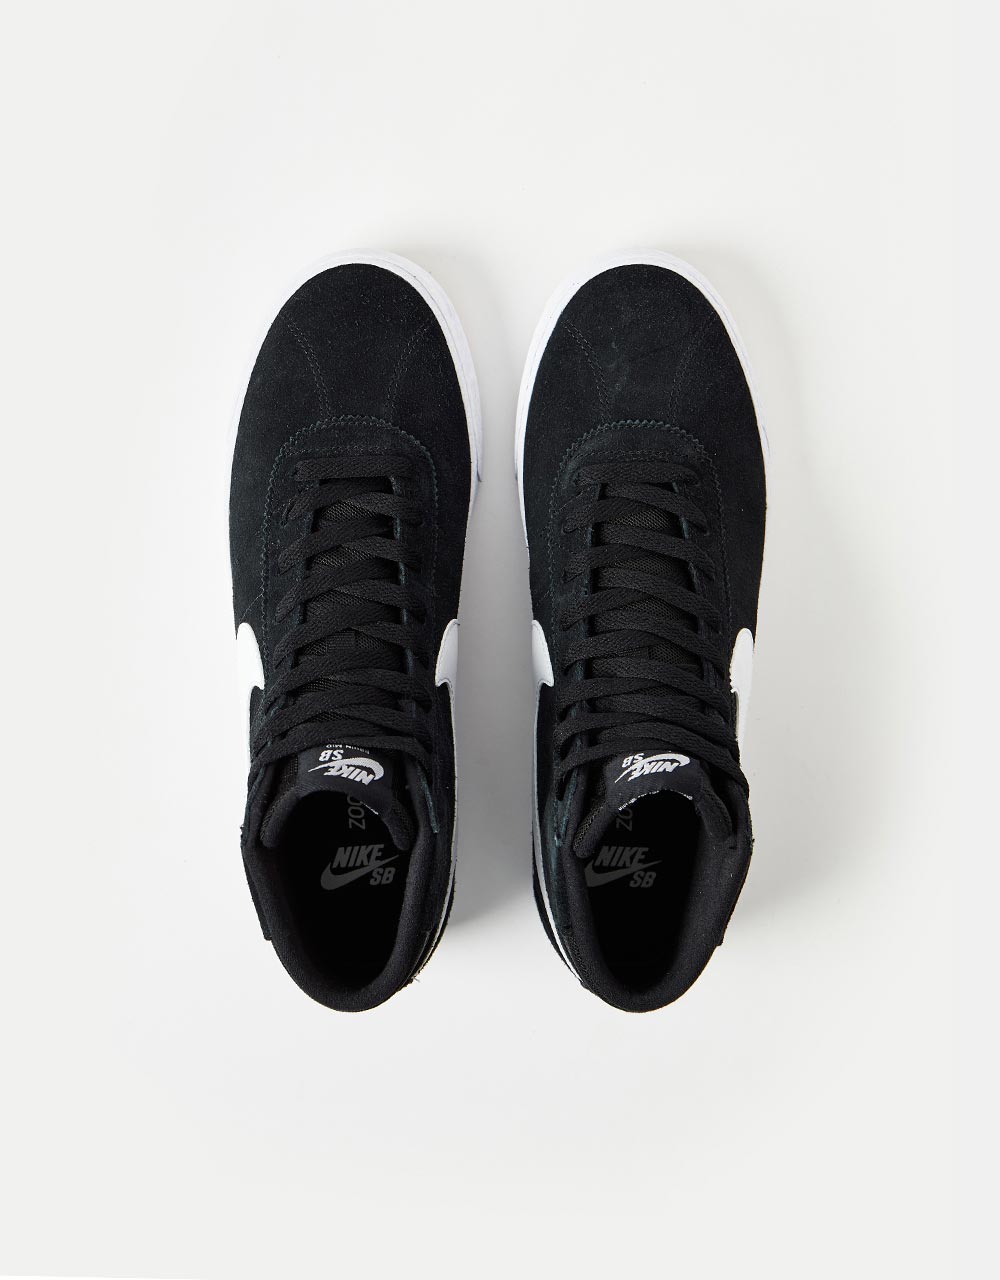 Nike SB Bruin High Skate Shoes - Black/White-Black-Gum Light Brown